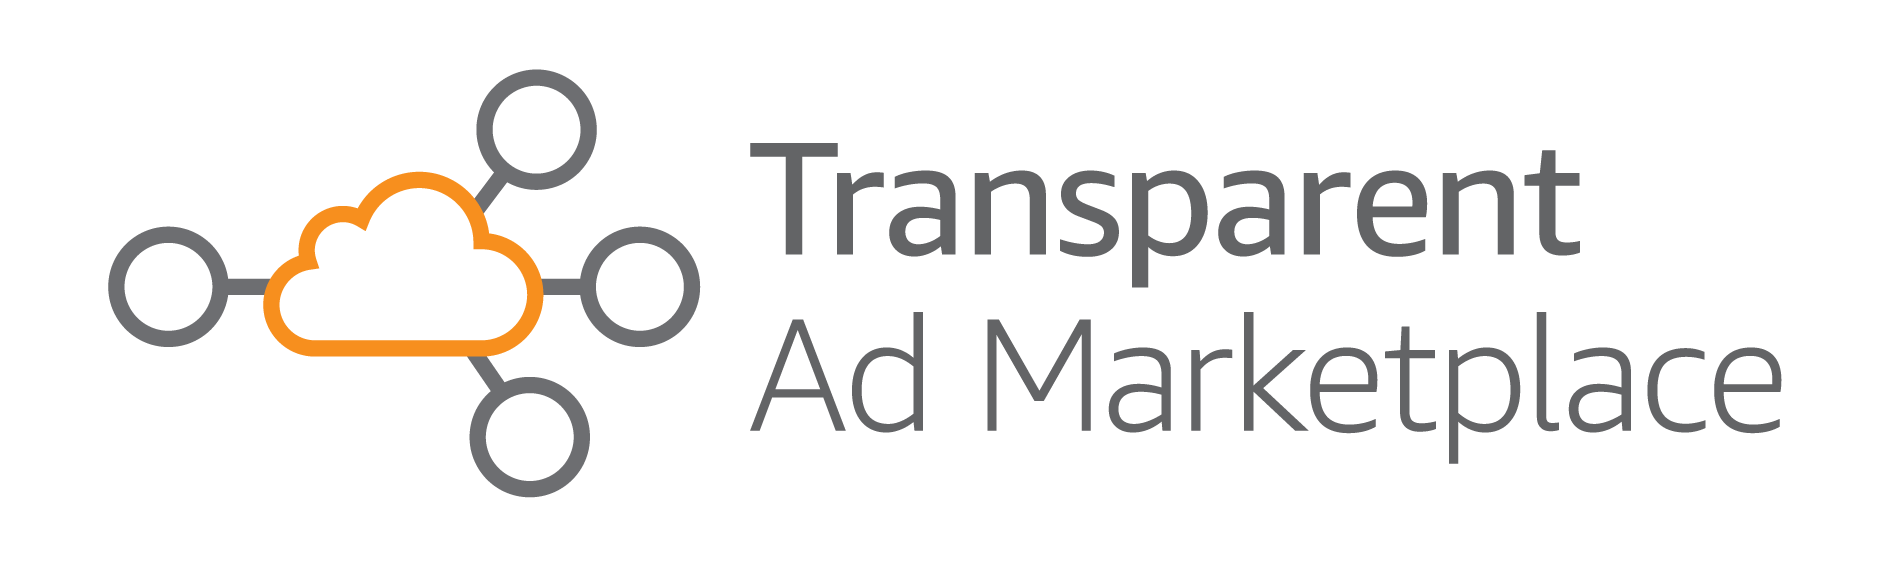 Amazon lance sa place de marché Transparent Ad Marketplace en Europe